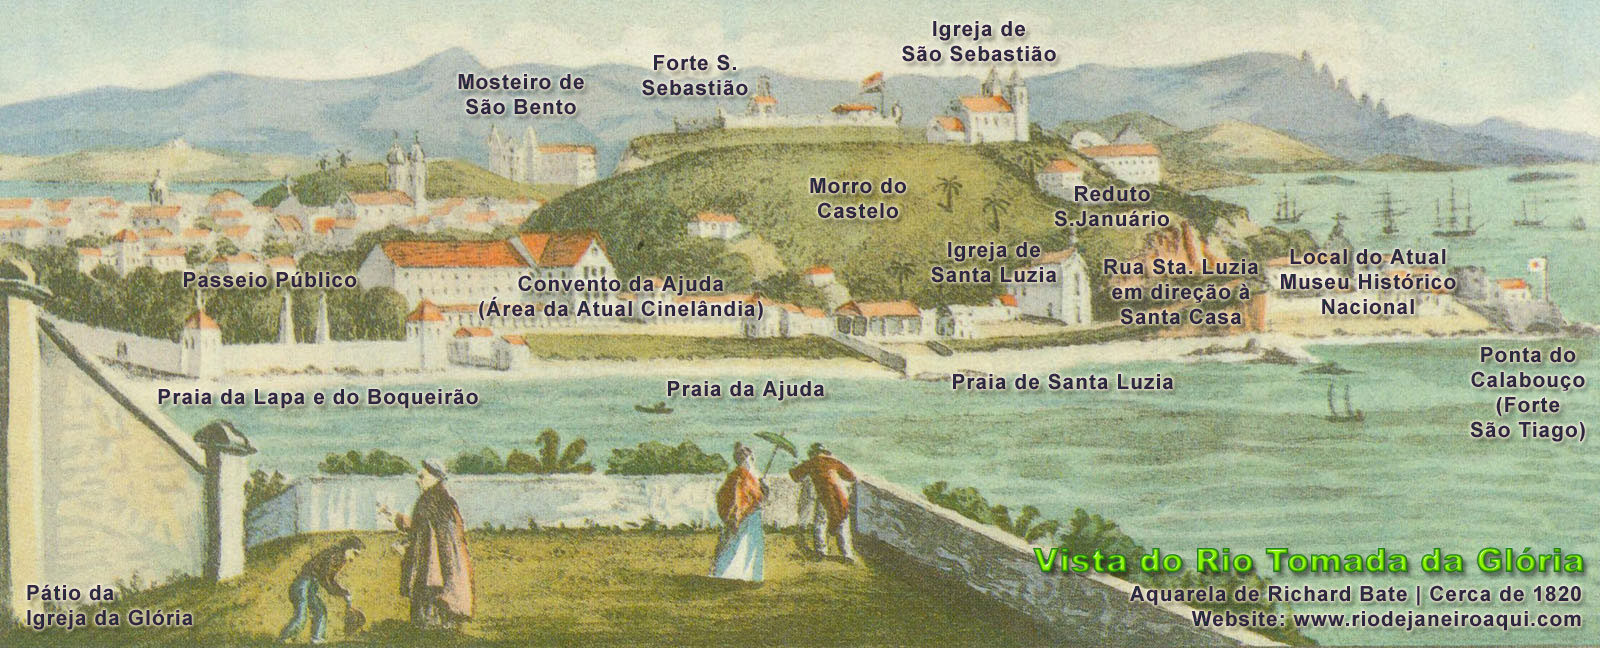 Morro do Castelo por volta de 1820